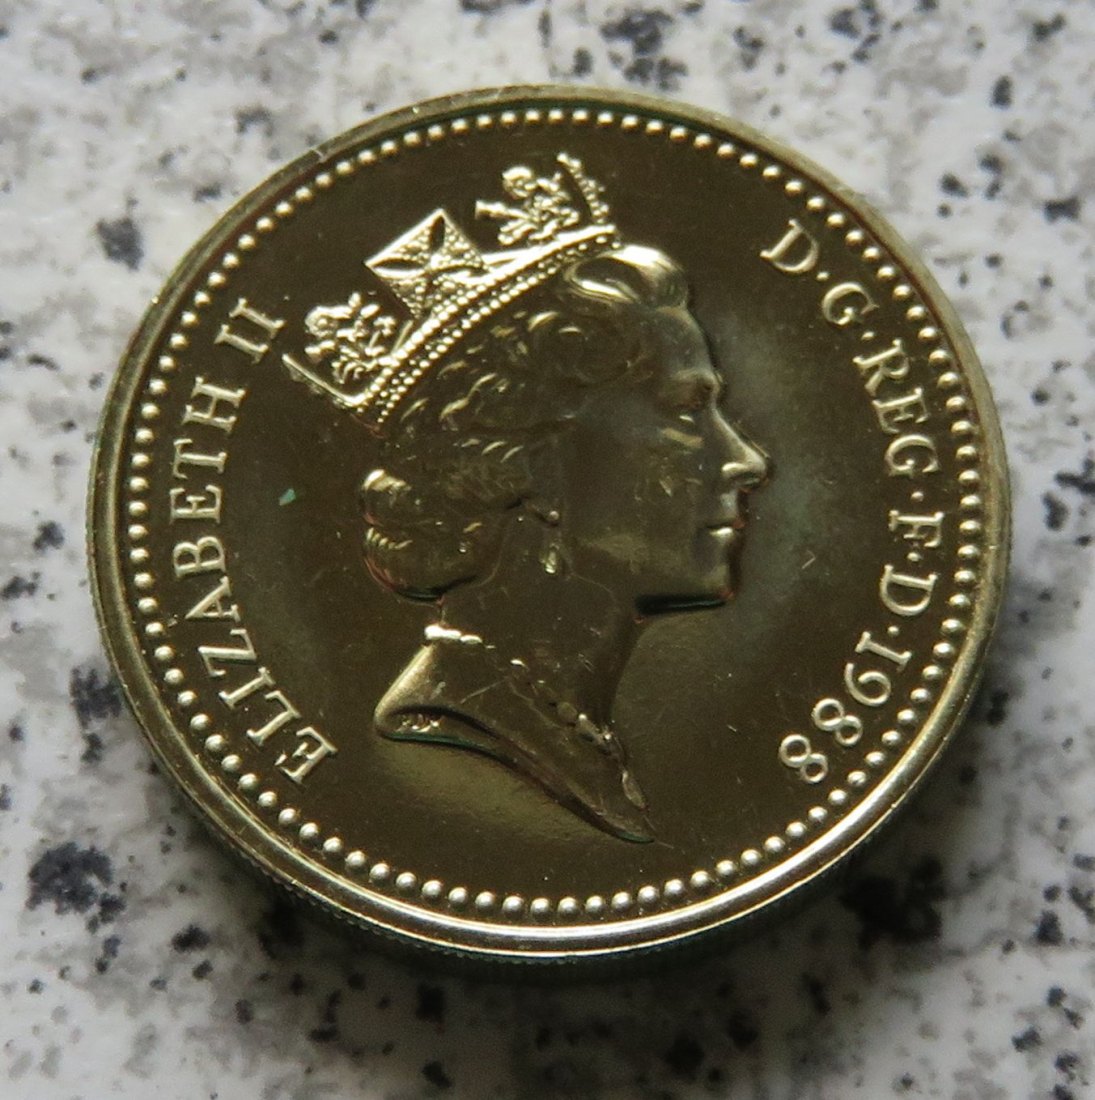  Großbritannien 1 Pfund 1988 / One Pound 1988, Erhaltung   